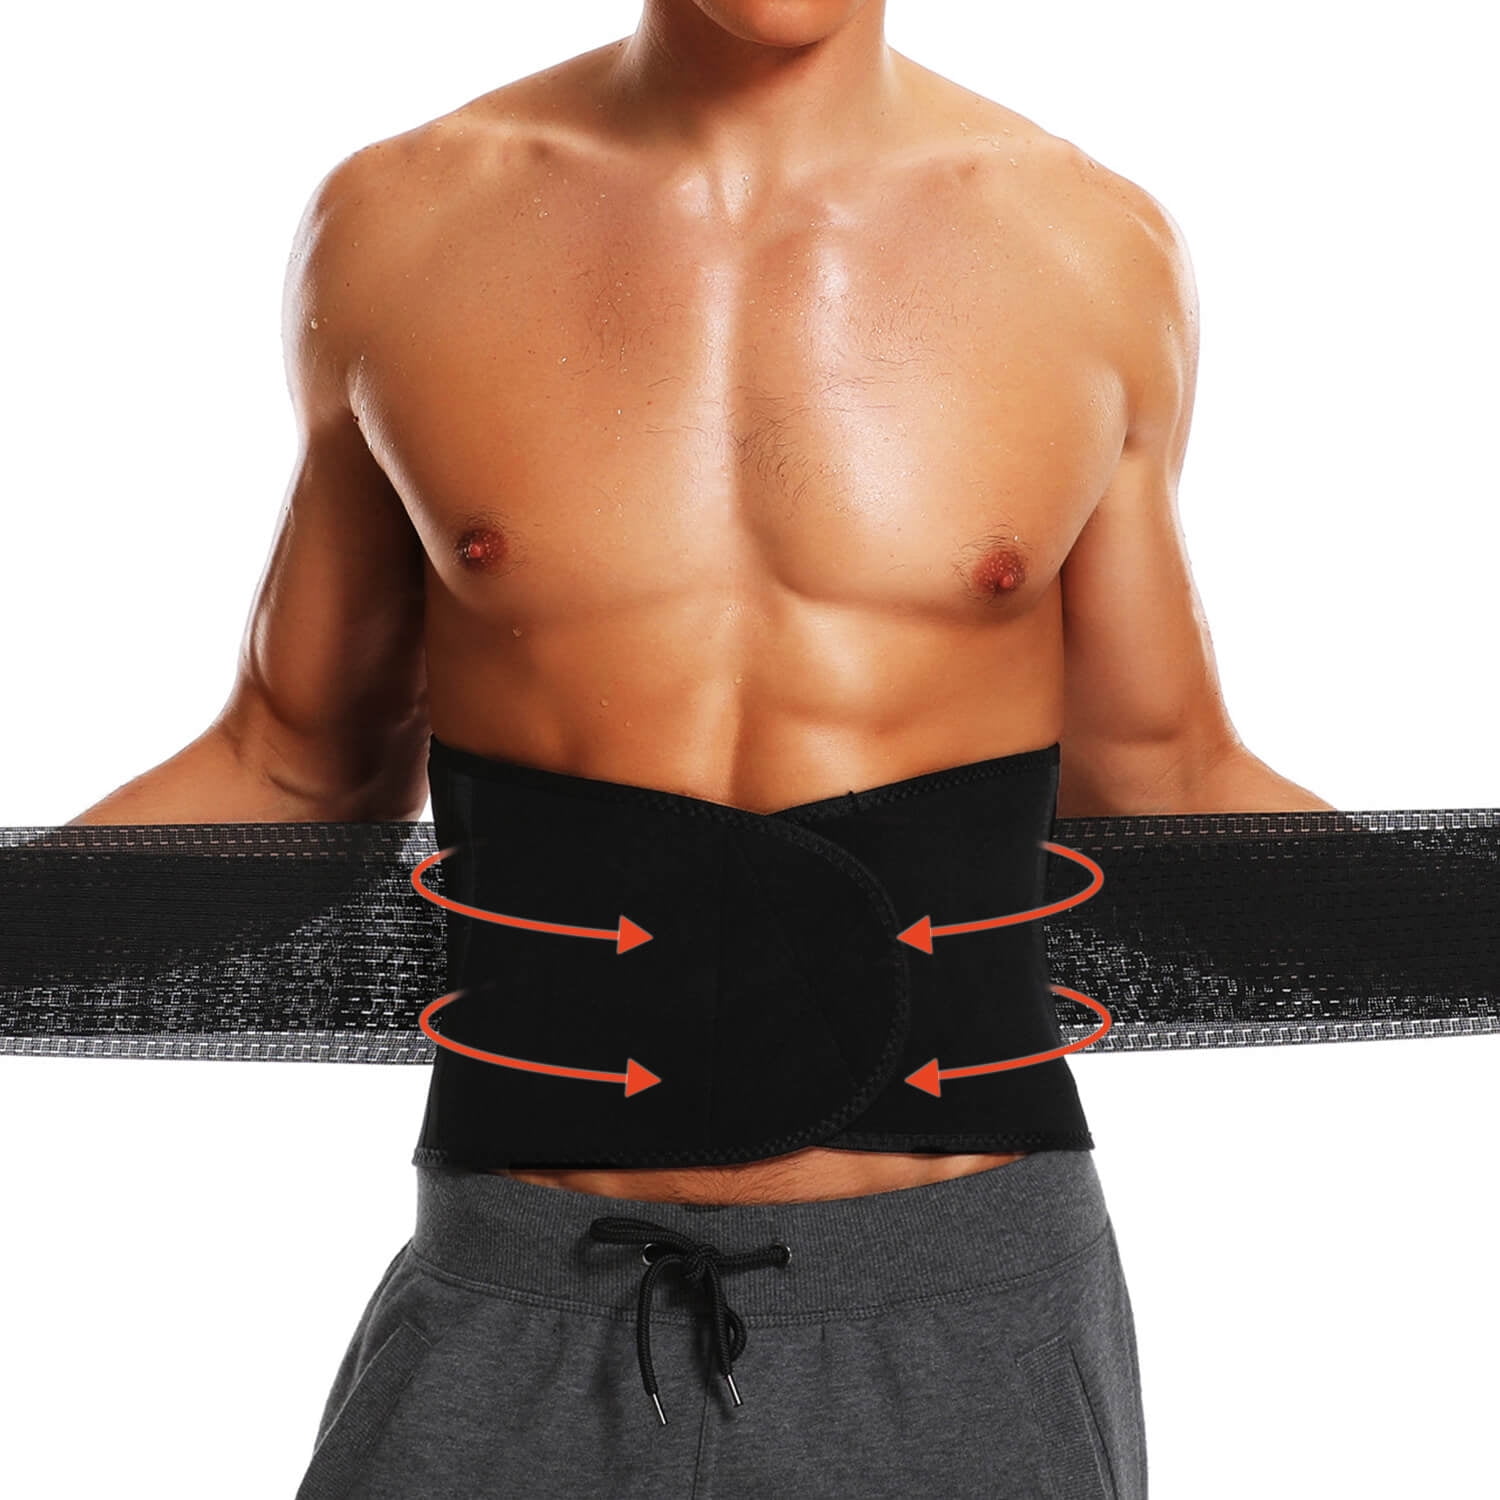 Men Waist Trainer Cincher Sweat Belt Wrap Body Shaper Back Supports Shapewear US 